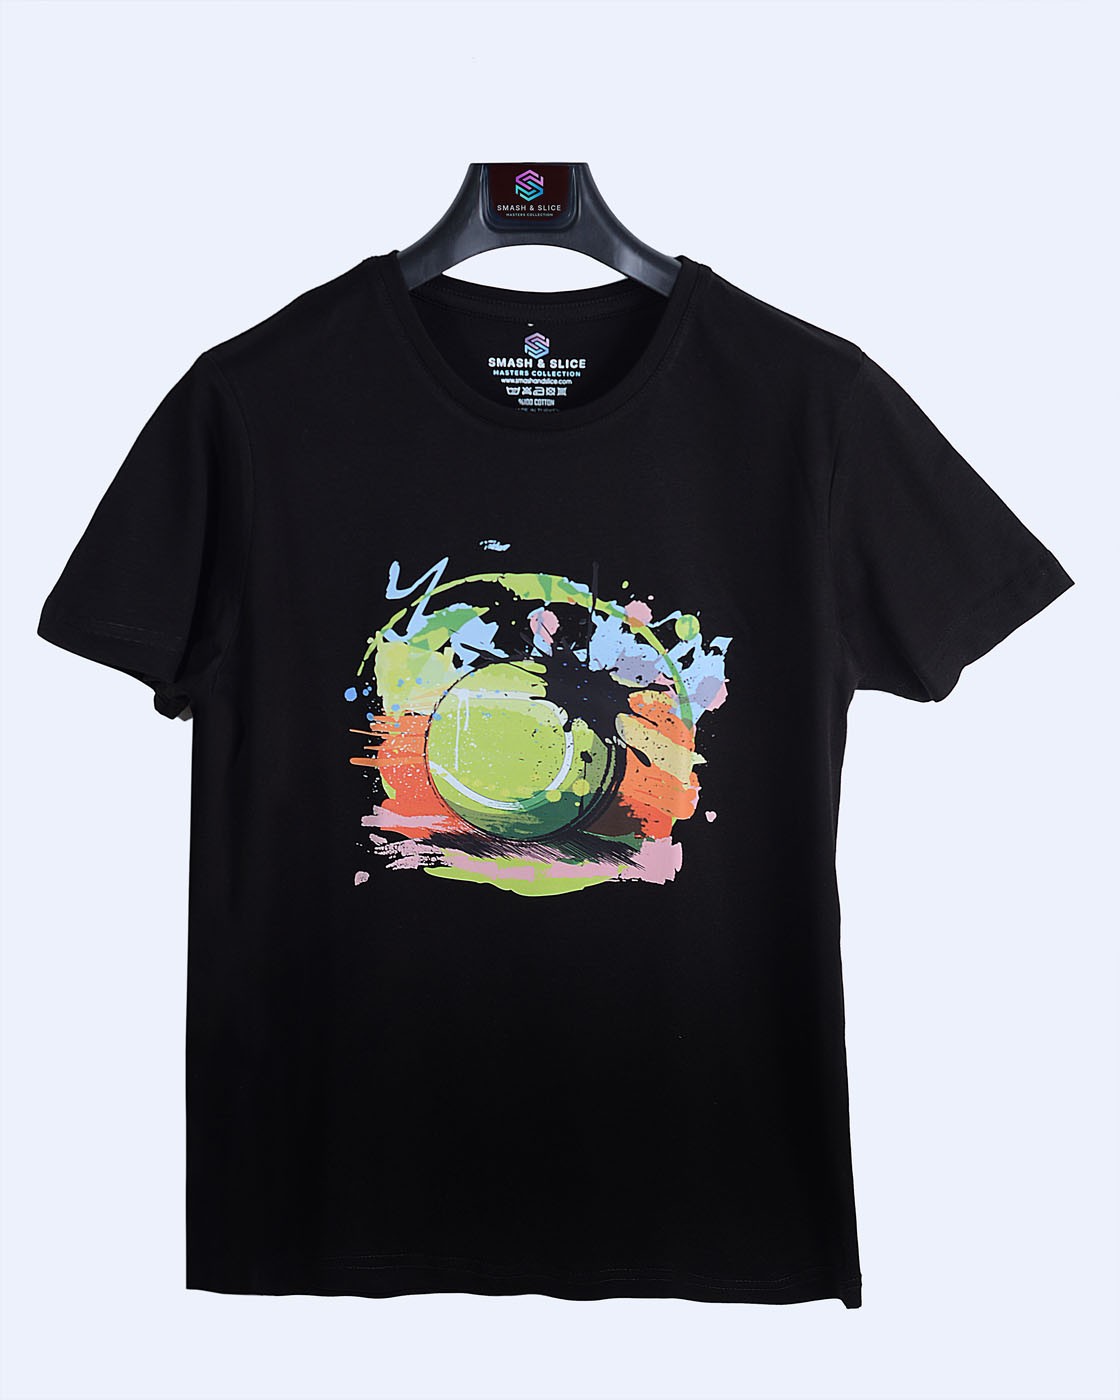 Smash & Slice Tenis Temalı Baskılı Unisex Çocuk T-Shirt "splash Ball"